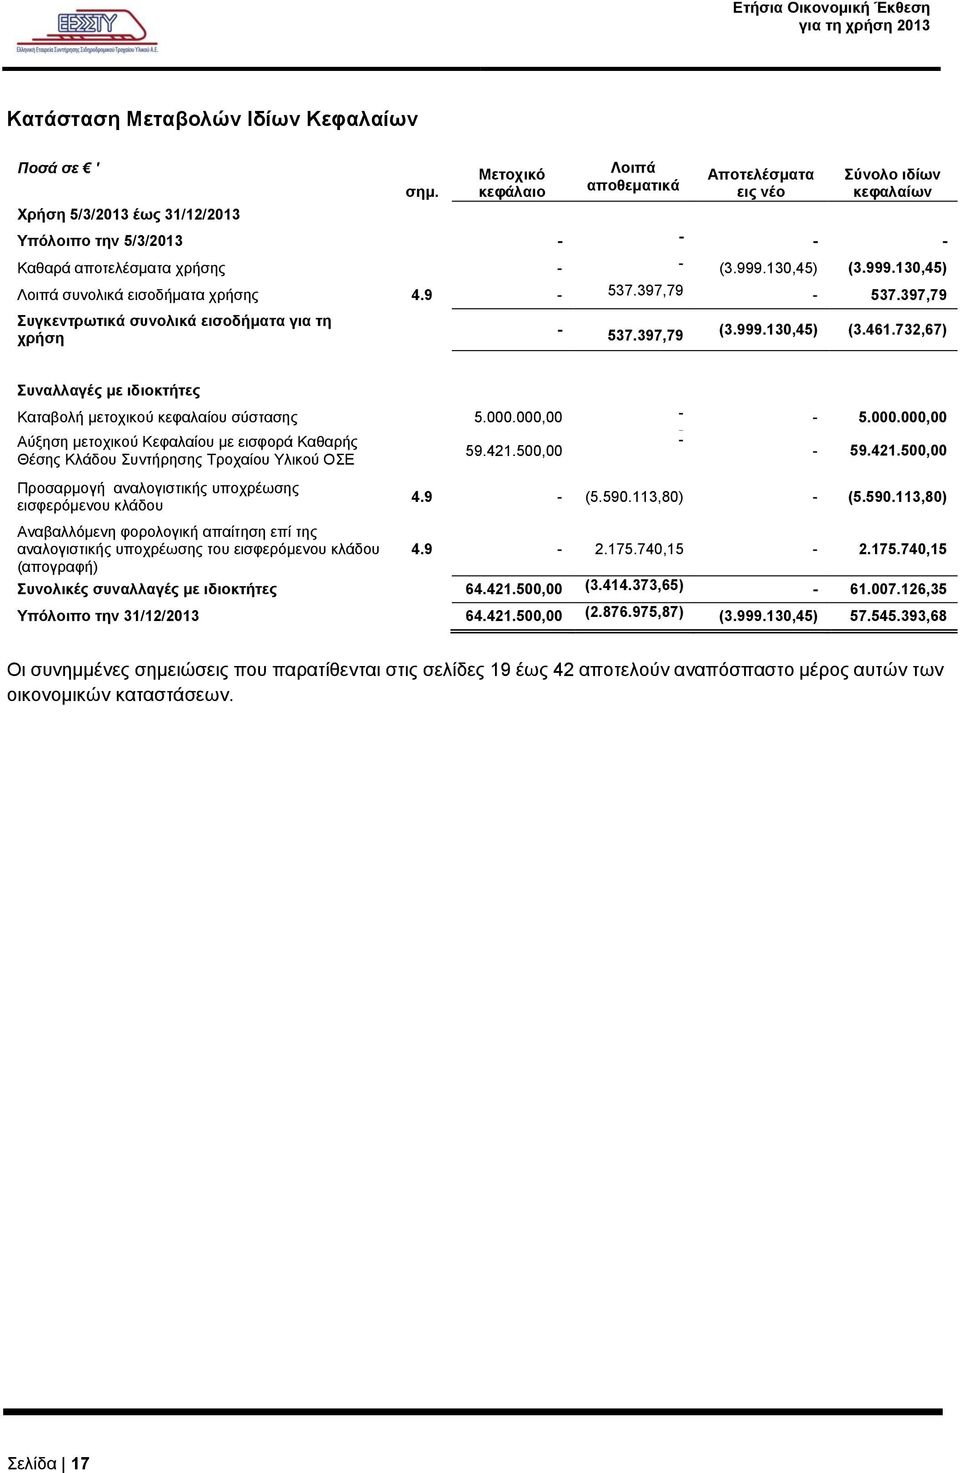 9-537.397,79-537.397,79 Συγκεντρωτικά συνολικά εισοδήματα για τη χρήση - 537.397,79 (3.999.130,45) (3.461.732,67) Συναλλαγές με ιδιοκτήτες Καταβολή μετοχικού κεφαλαίου σύστασης 5.000.